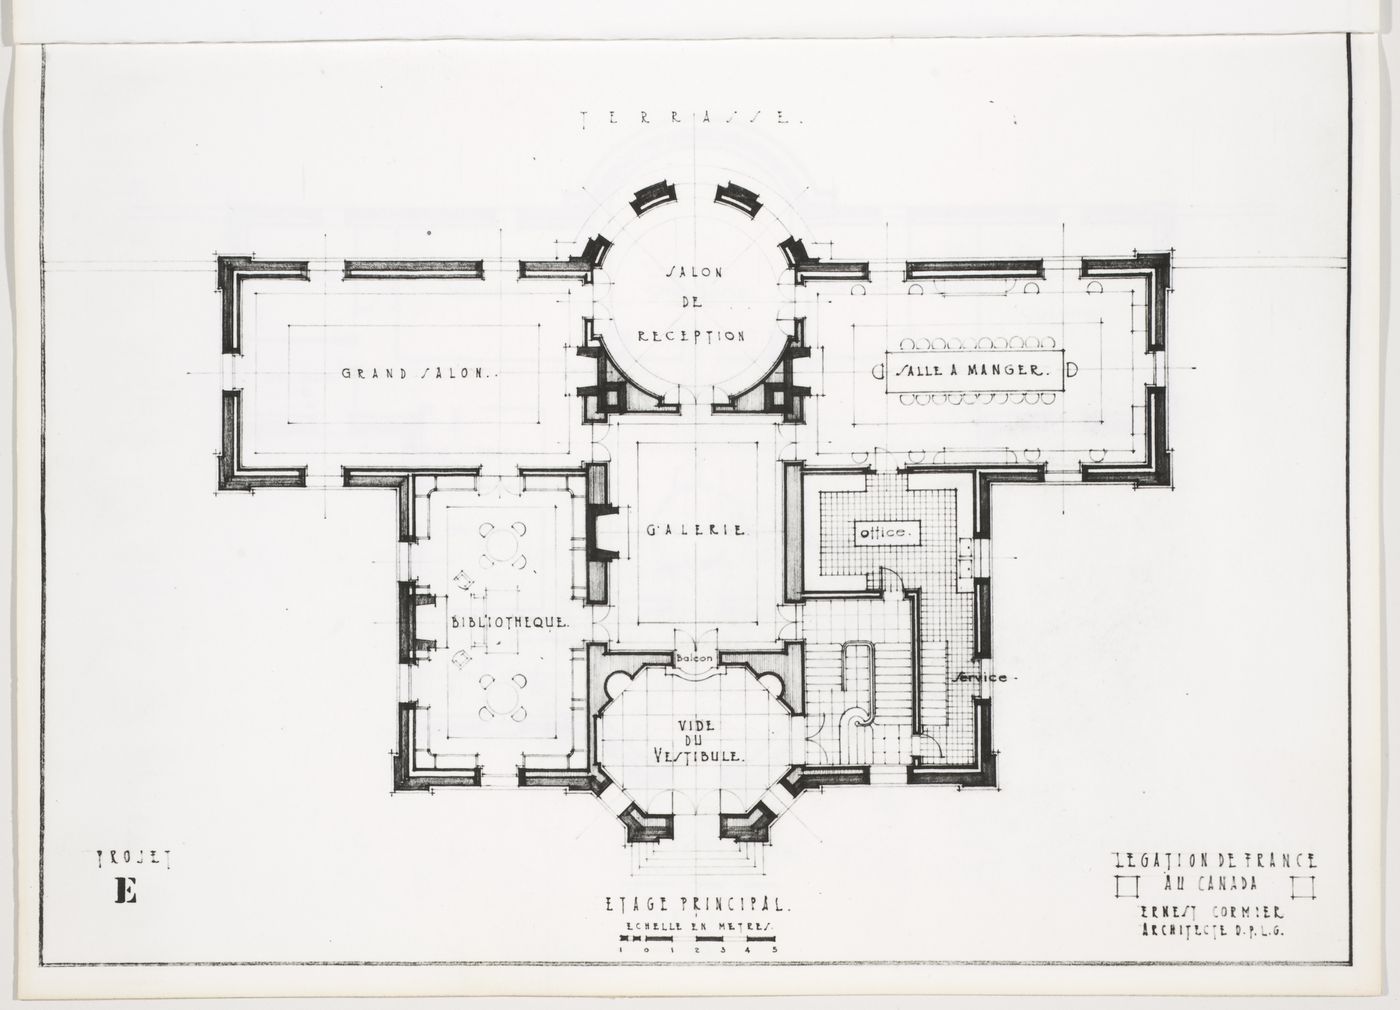 Plan de l'étage principal,  Légation de France au Canada, Ottawa, Canada (1932, 1936)